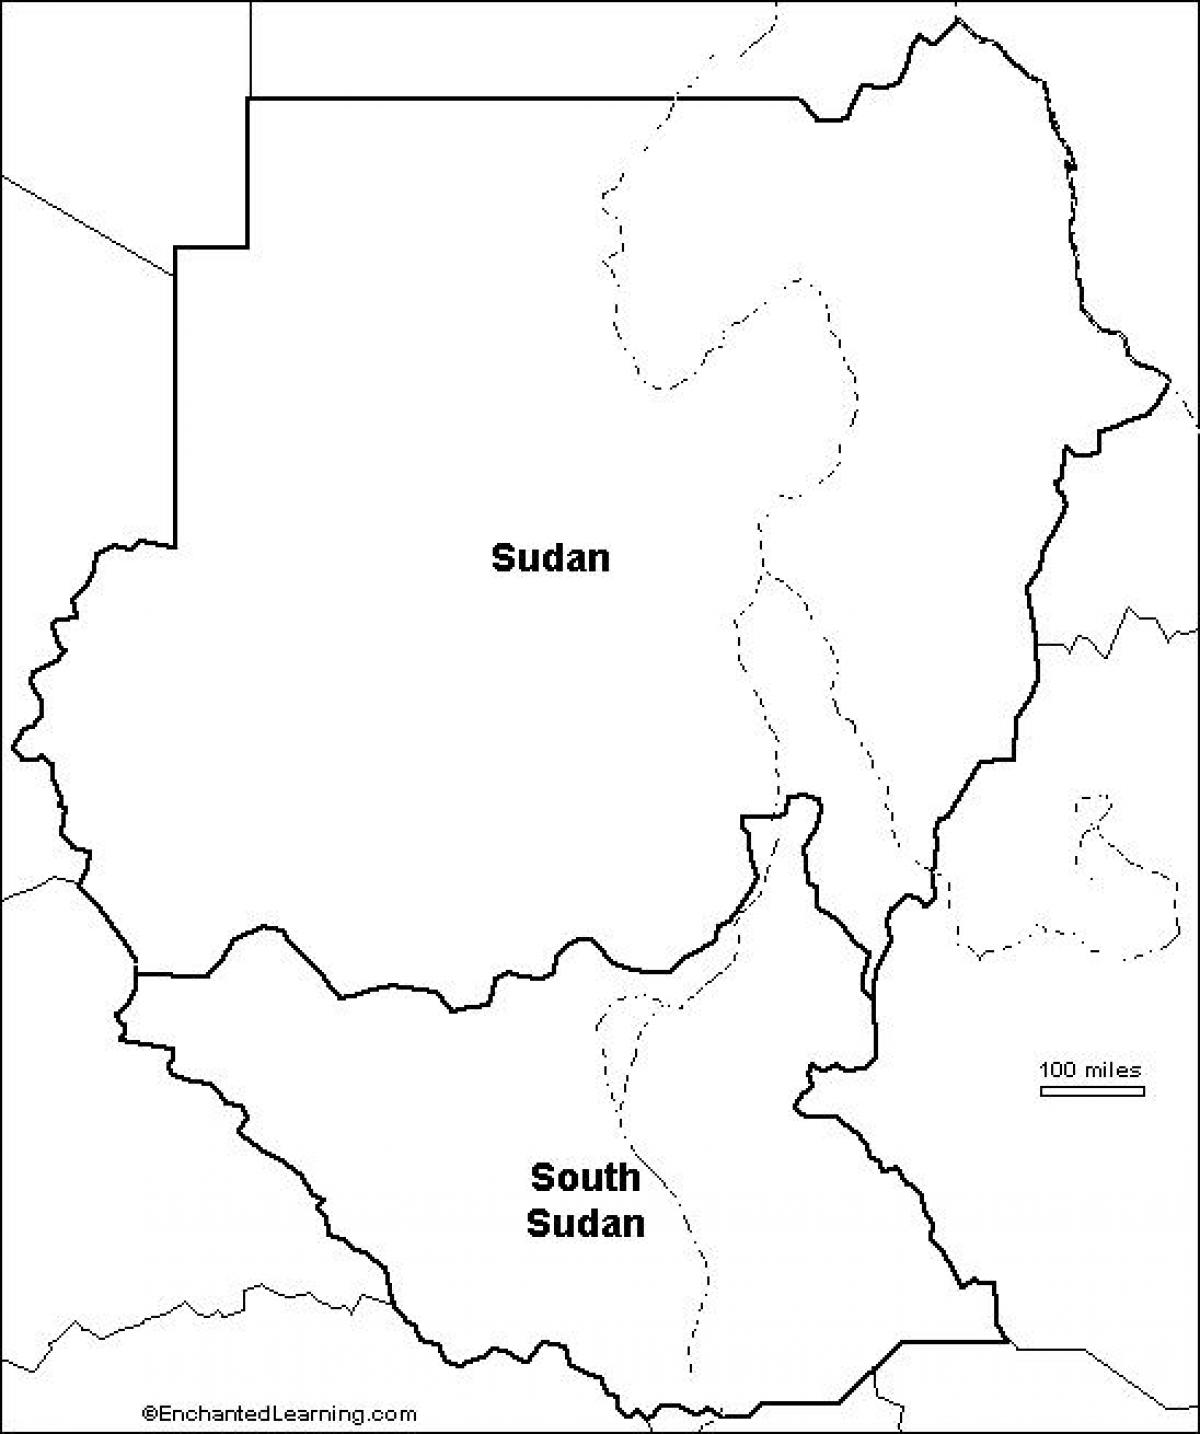 Χάρτης του Σουδάν κενό